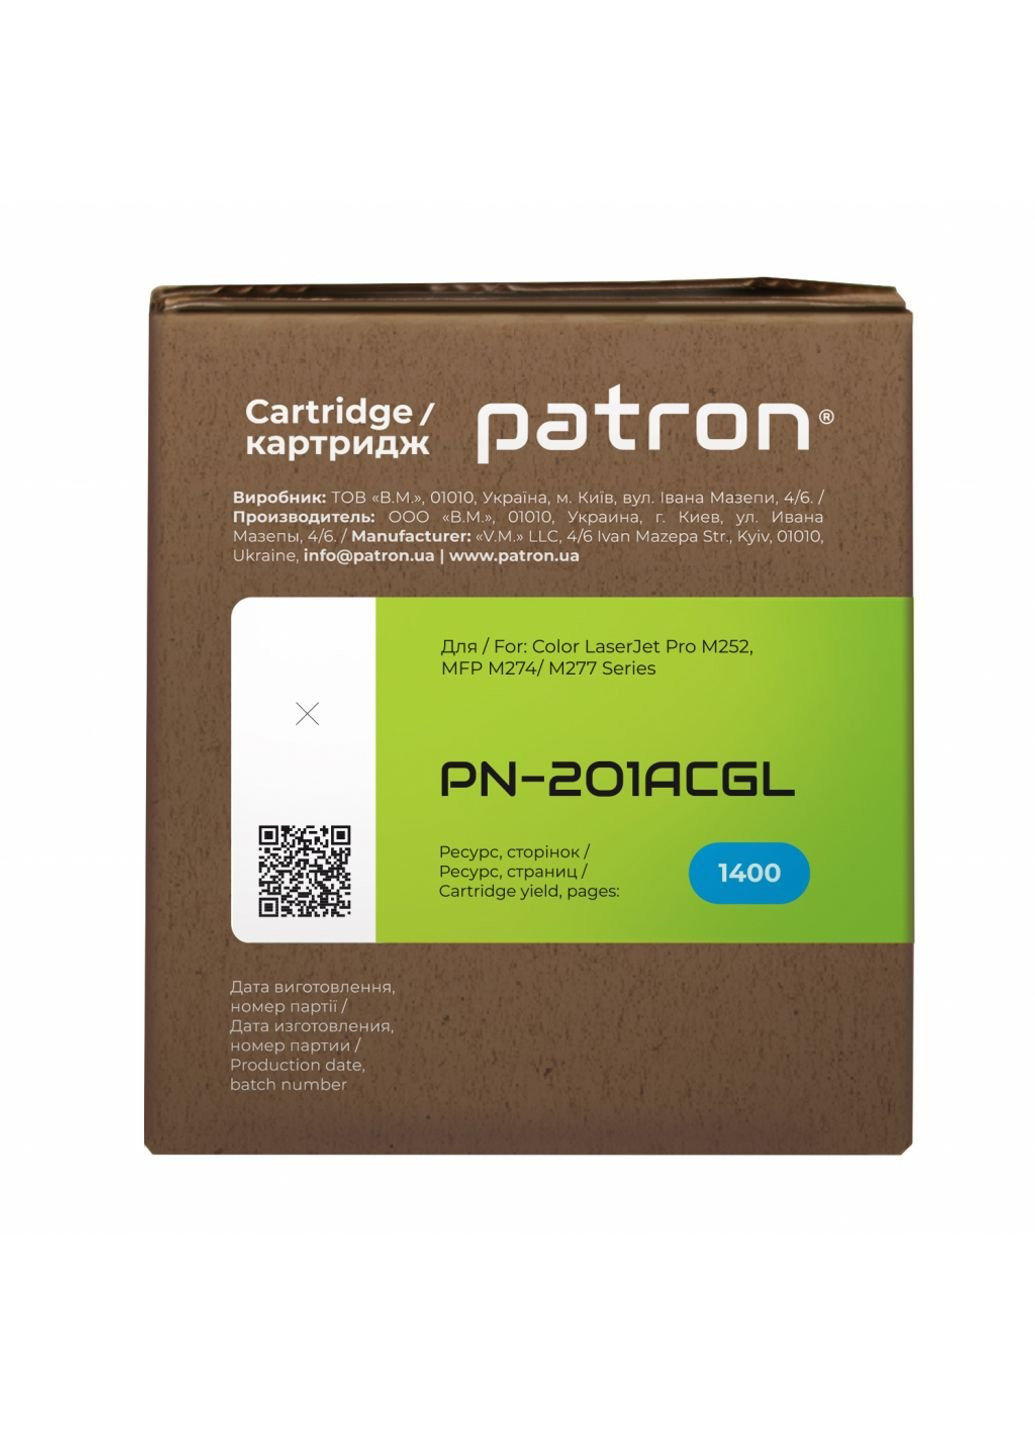 Картридж (PN-201ACGL) Patron hp clj cf401a для m252/m274/m277 cyan, green label (247614420)